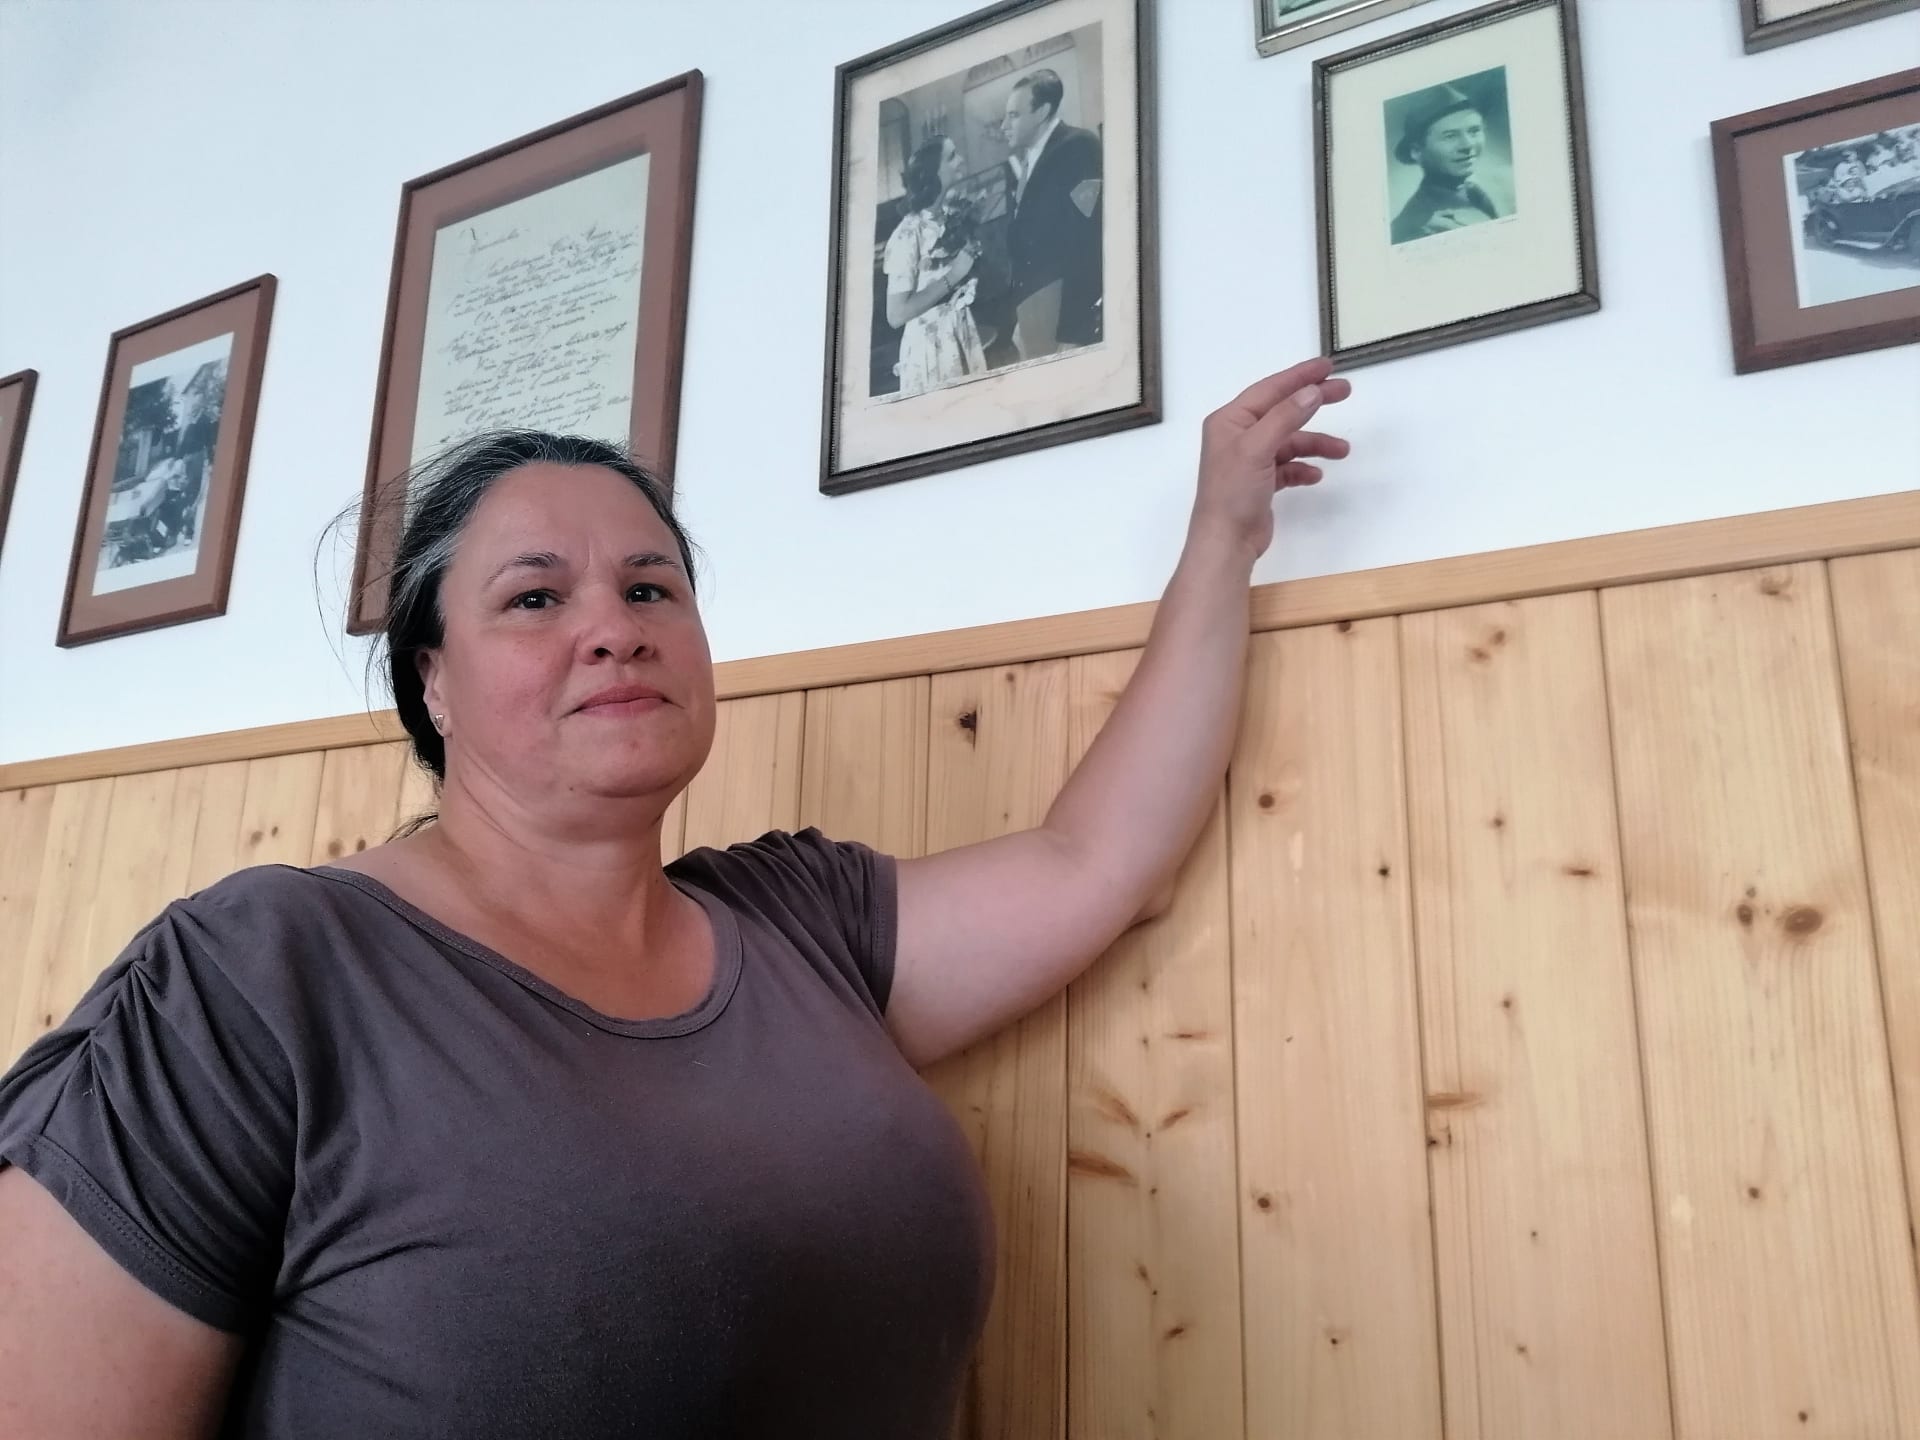 Věra Špinarová ukazuje památky na slavné hosty penzionu v Bídě. Fotky s podpisy slavných herců meziválečného Československa.